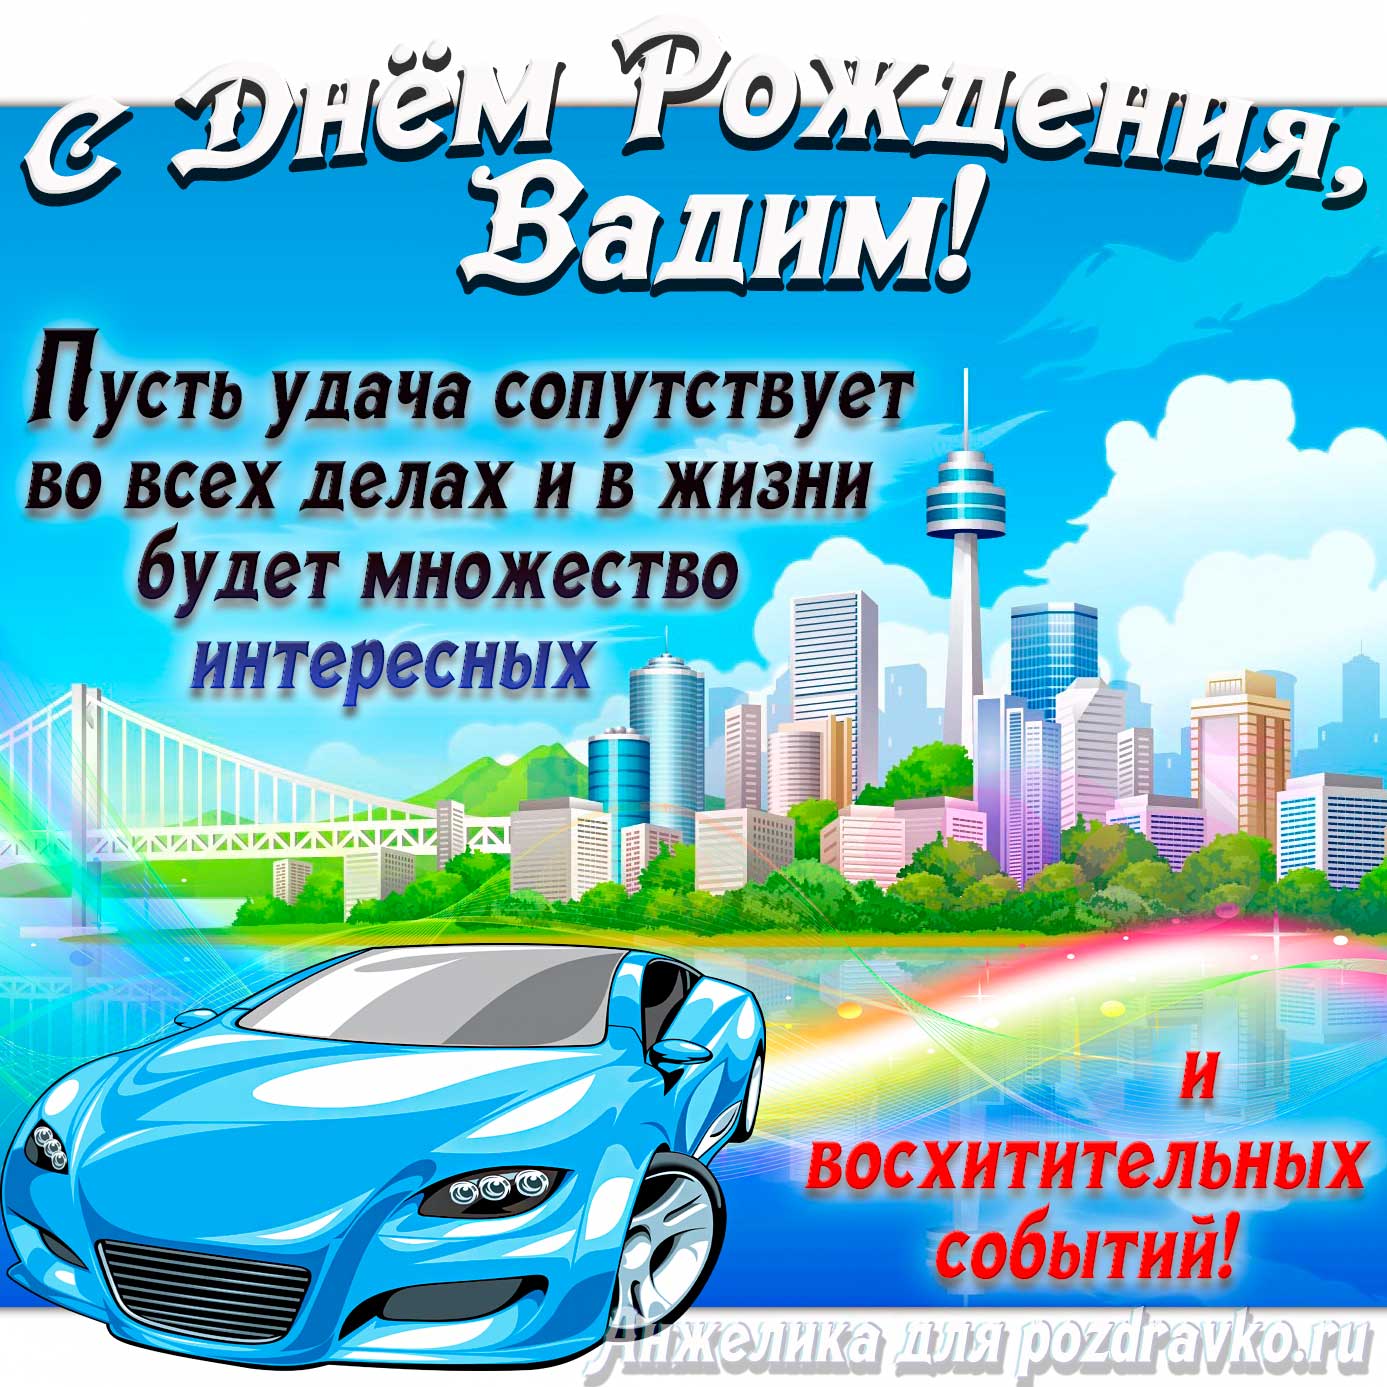 Открытка - с Днём Рождения Вадим с голубой машиной и пожеланием. Скачать бесплатно или отправить картинку.